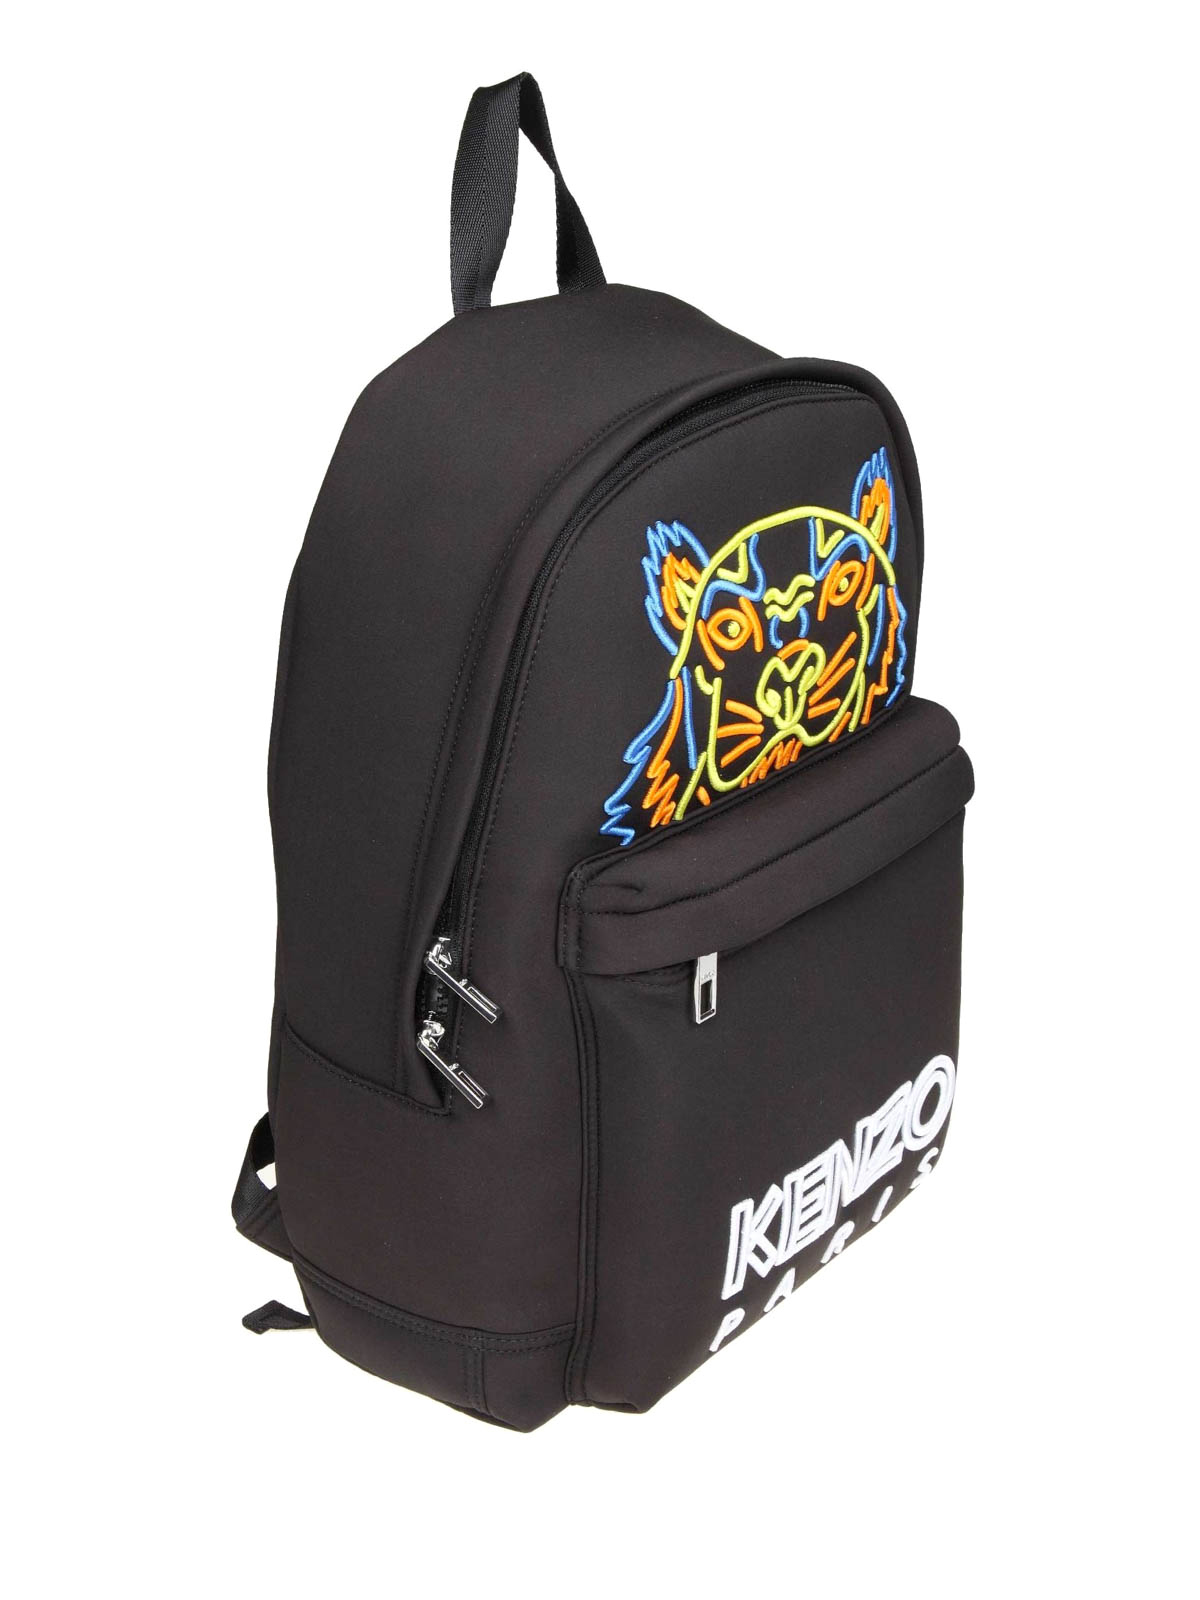 Tiger large black neoprene backpack 